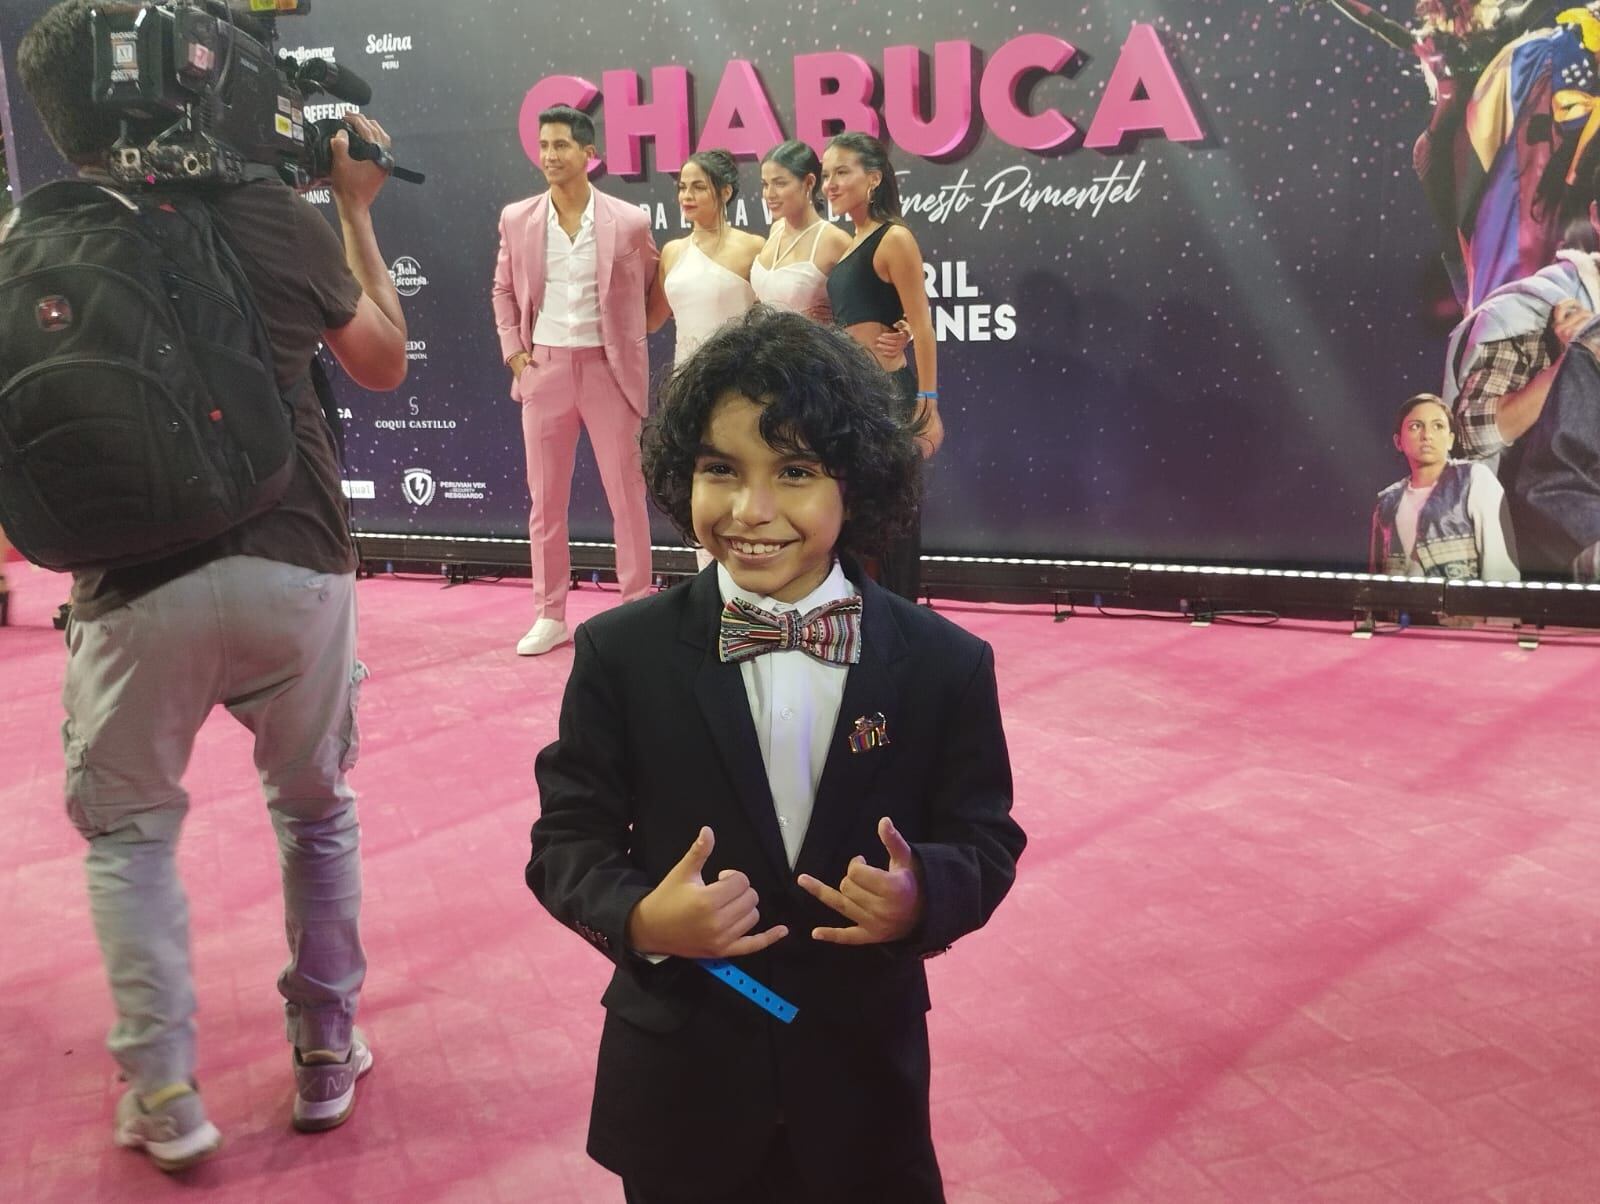 Izan Alcazar, quien hace del niño Ernesto en "Chabuca".